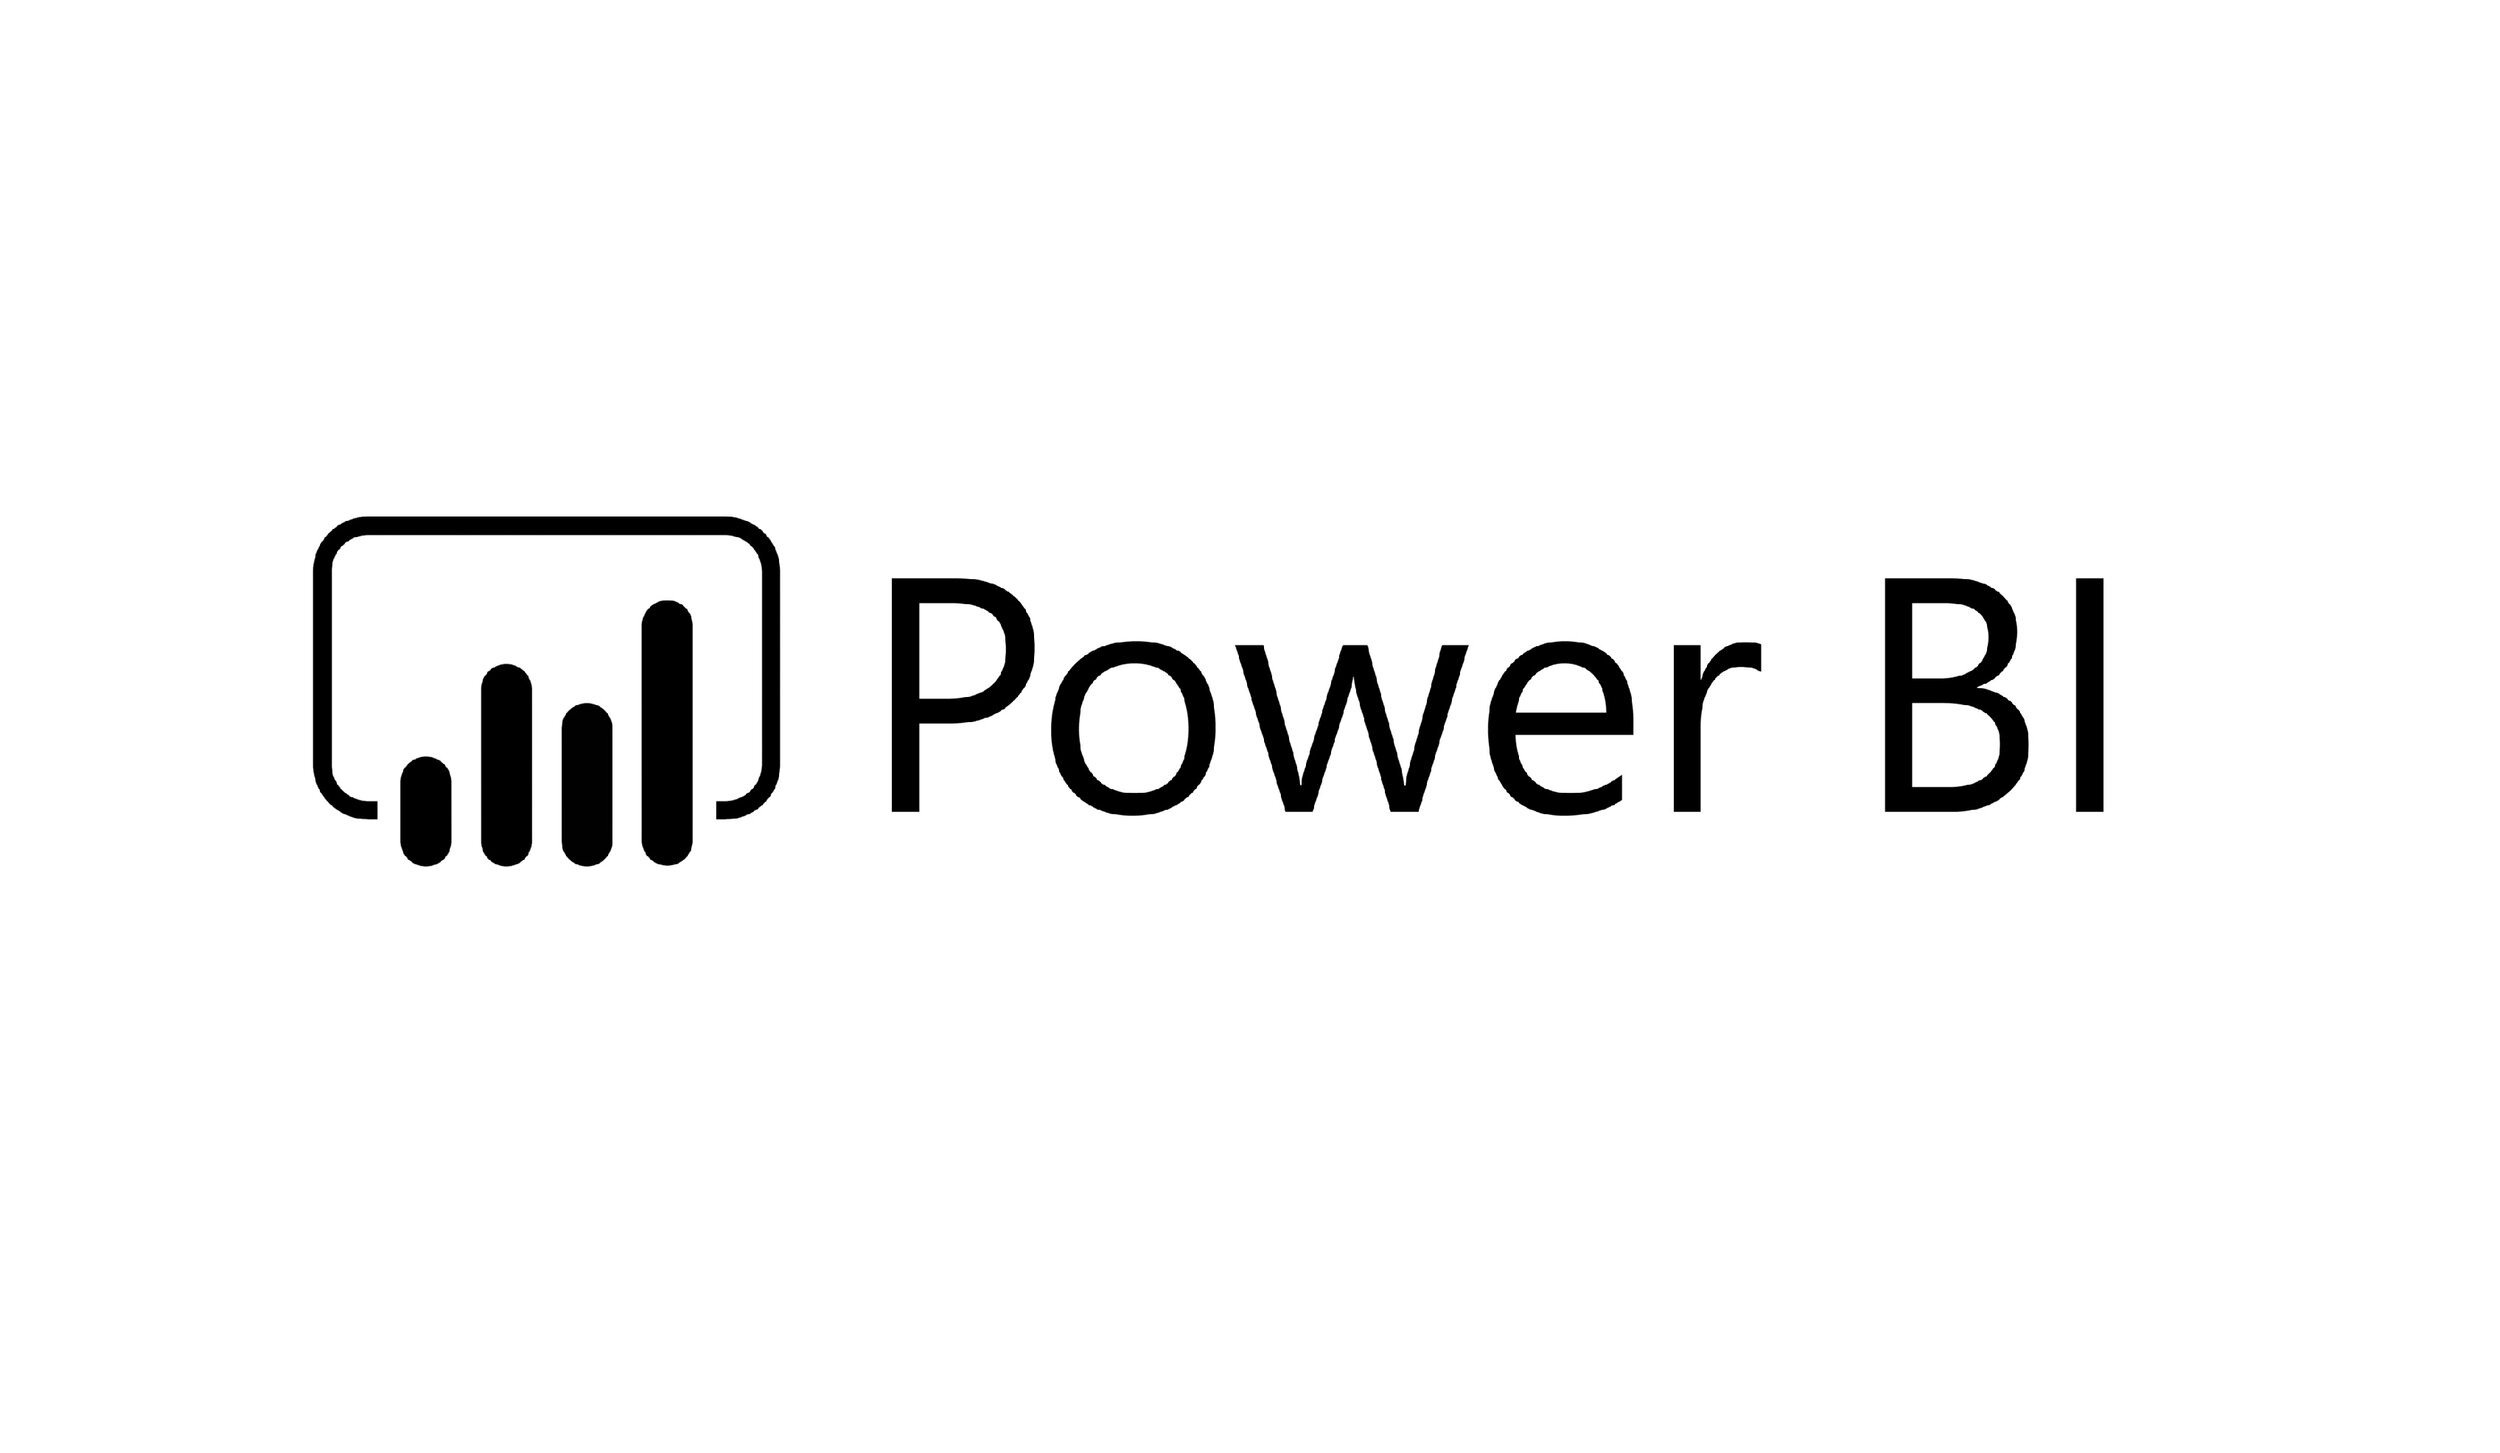 Power BI slide1.jpg